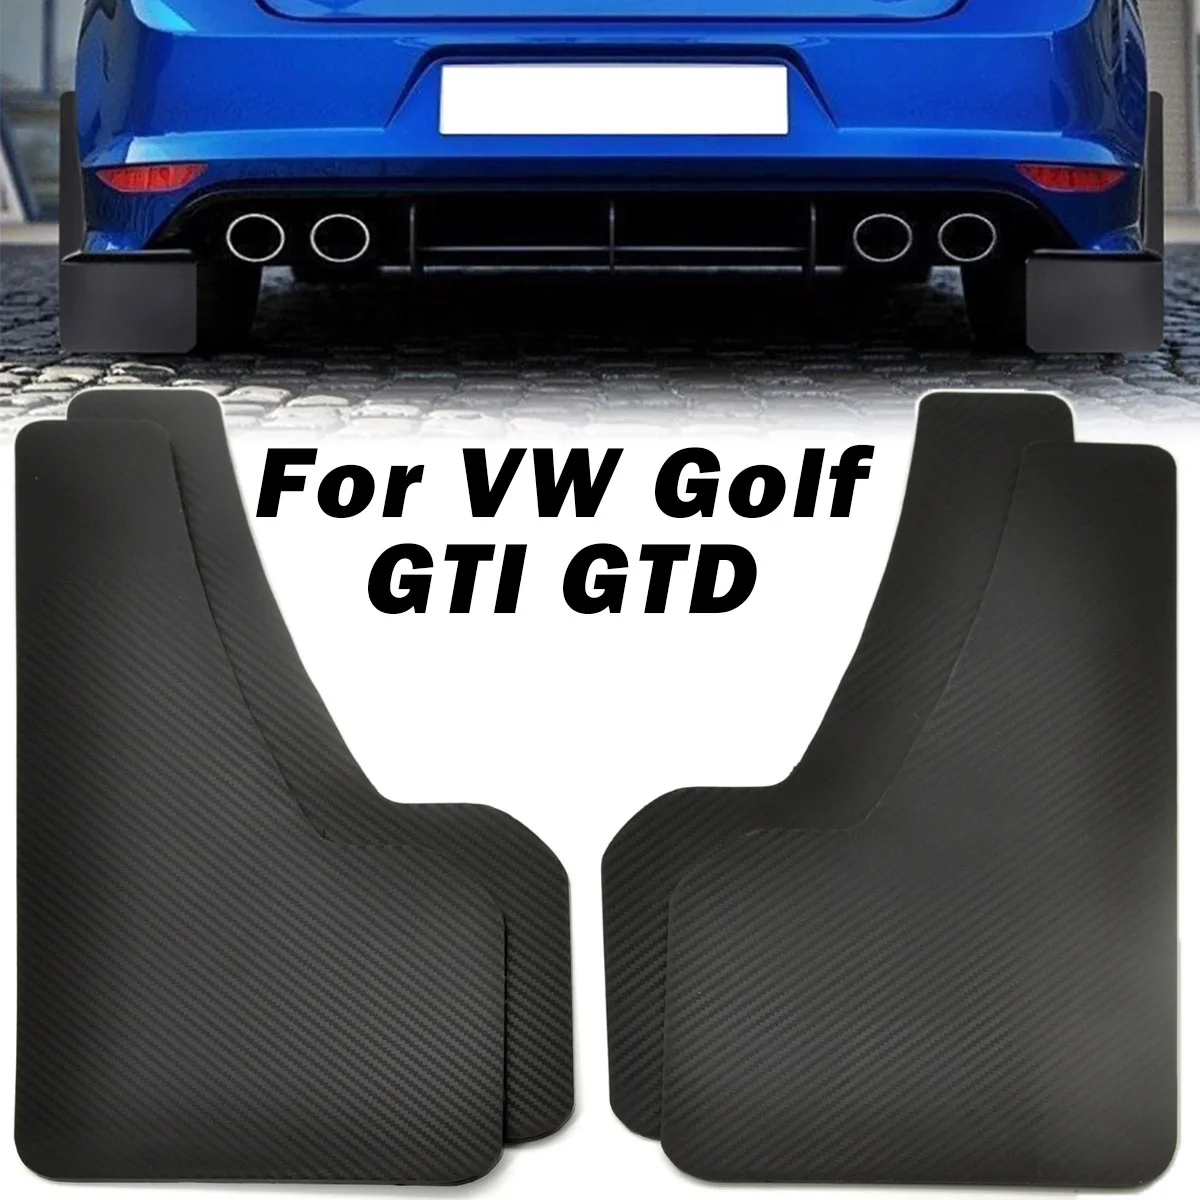 قطع حماية الطين لـ VW Golf 2 3 4 5 6 7 8 GTI GTD R R32 واقيات الطين موانع الطين موانع الطين MK1 MK2 MK3 tsi tdi Estate Plus ملحقات